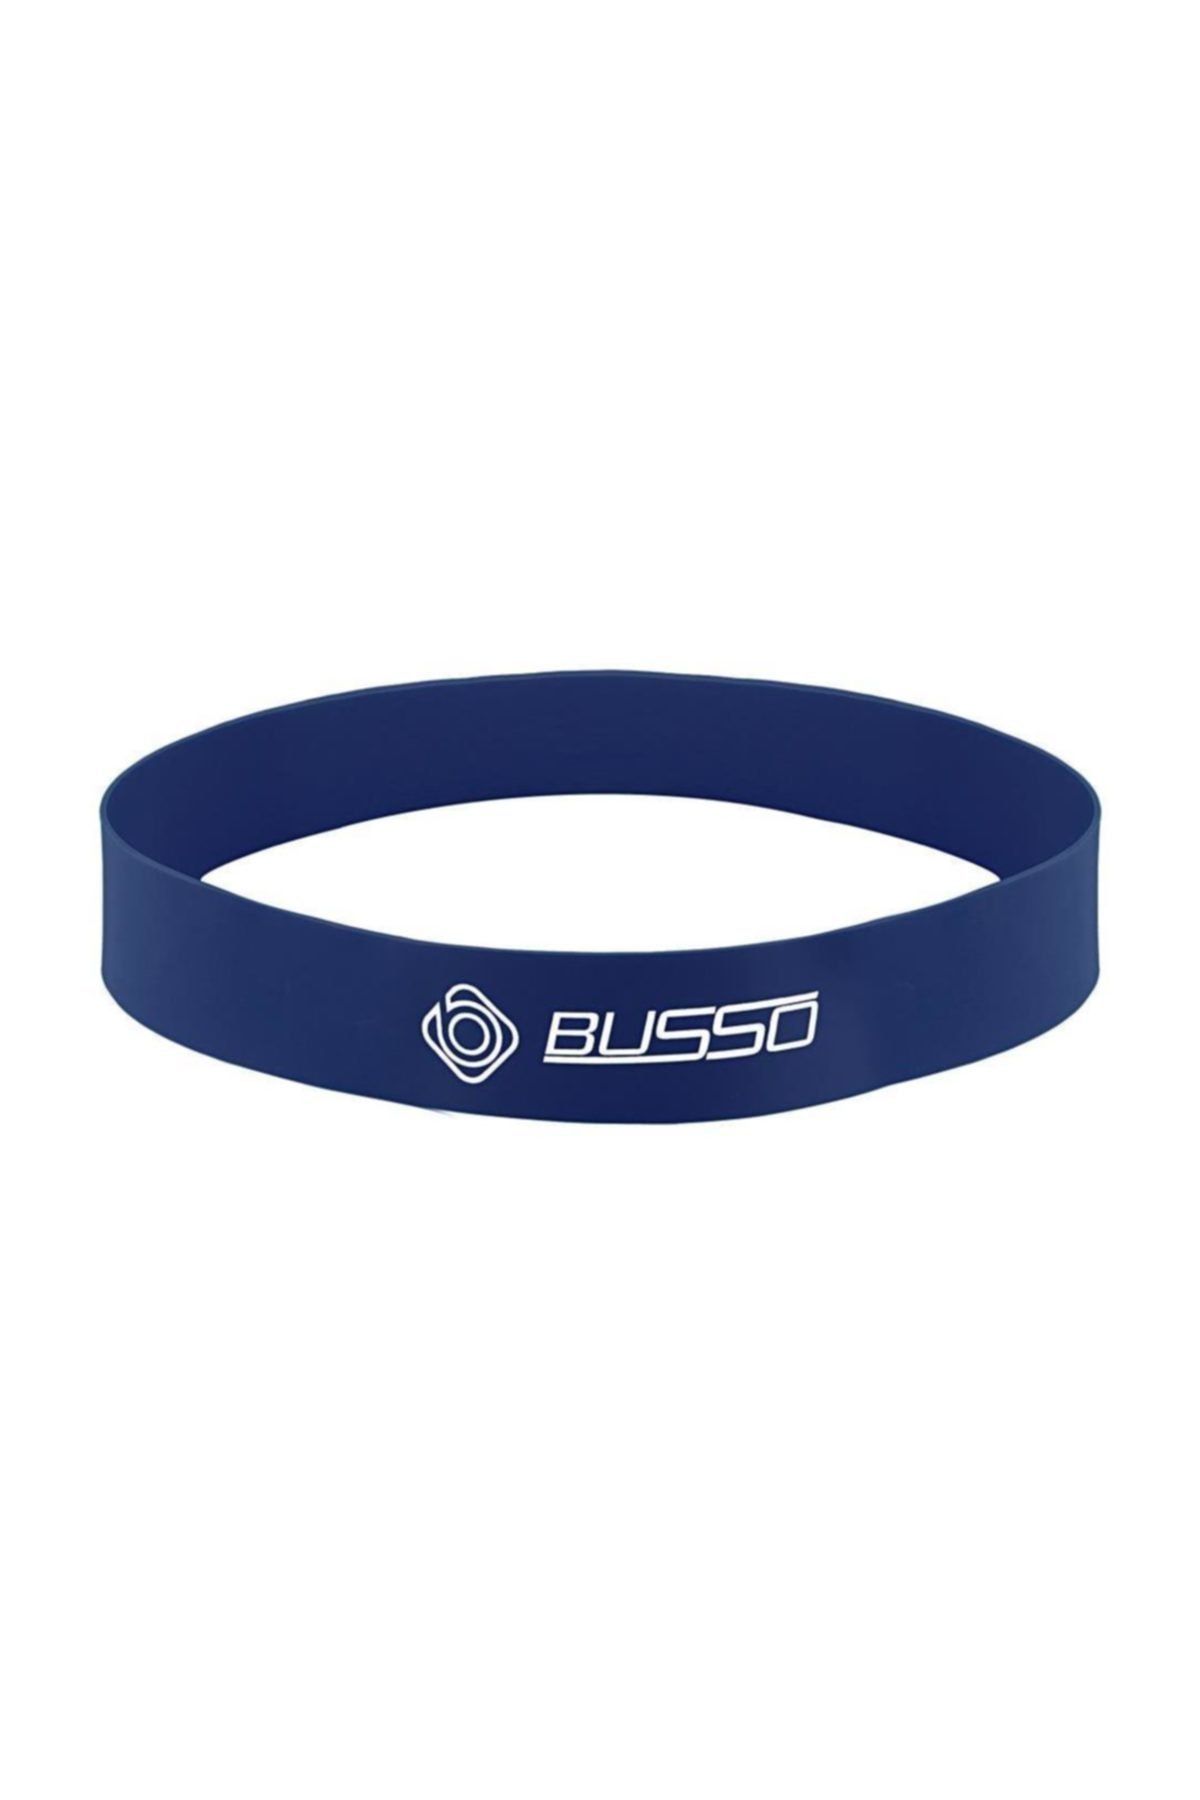 Busso Lab 30 Latex Aerobık Band ( 500*30*0,8mm) Mavi